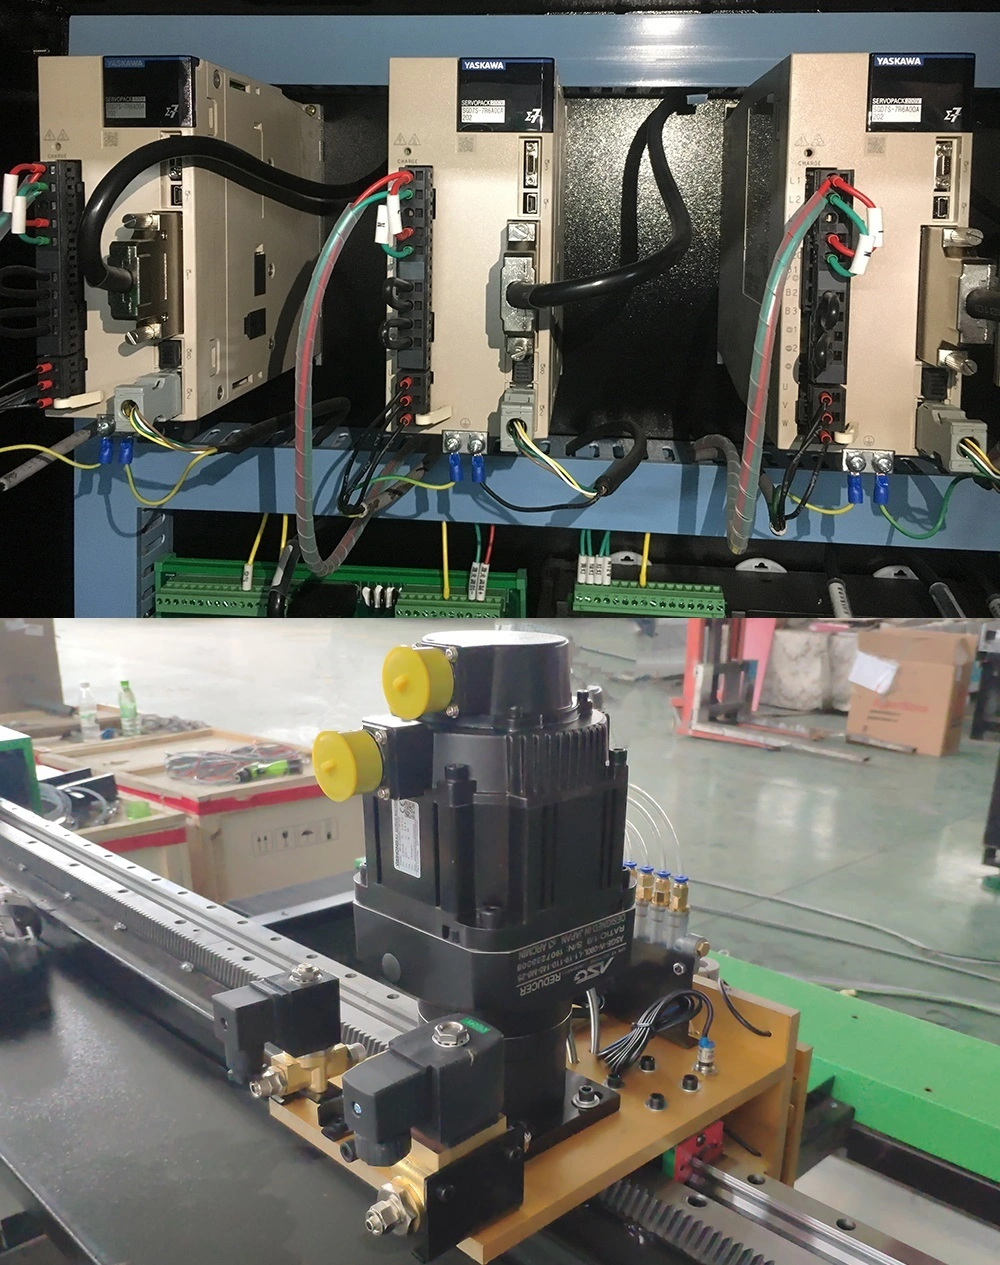 1000W CNC Laser Cutting Machine Fiber Laser Metal Cutting Machine